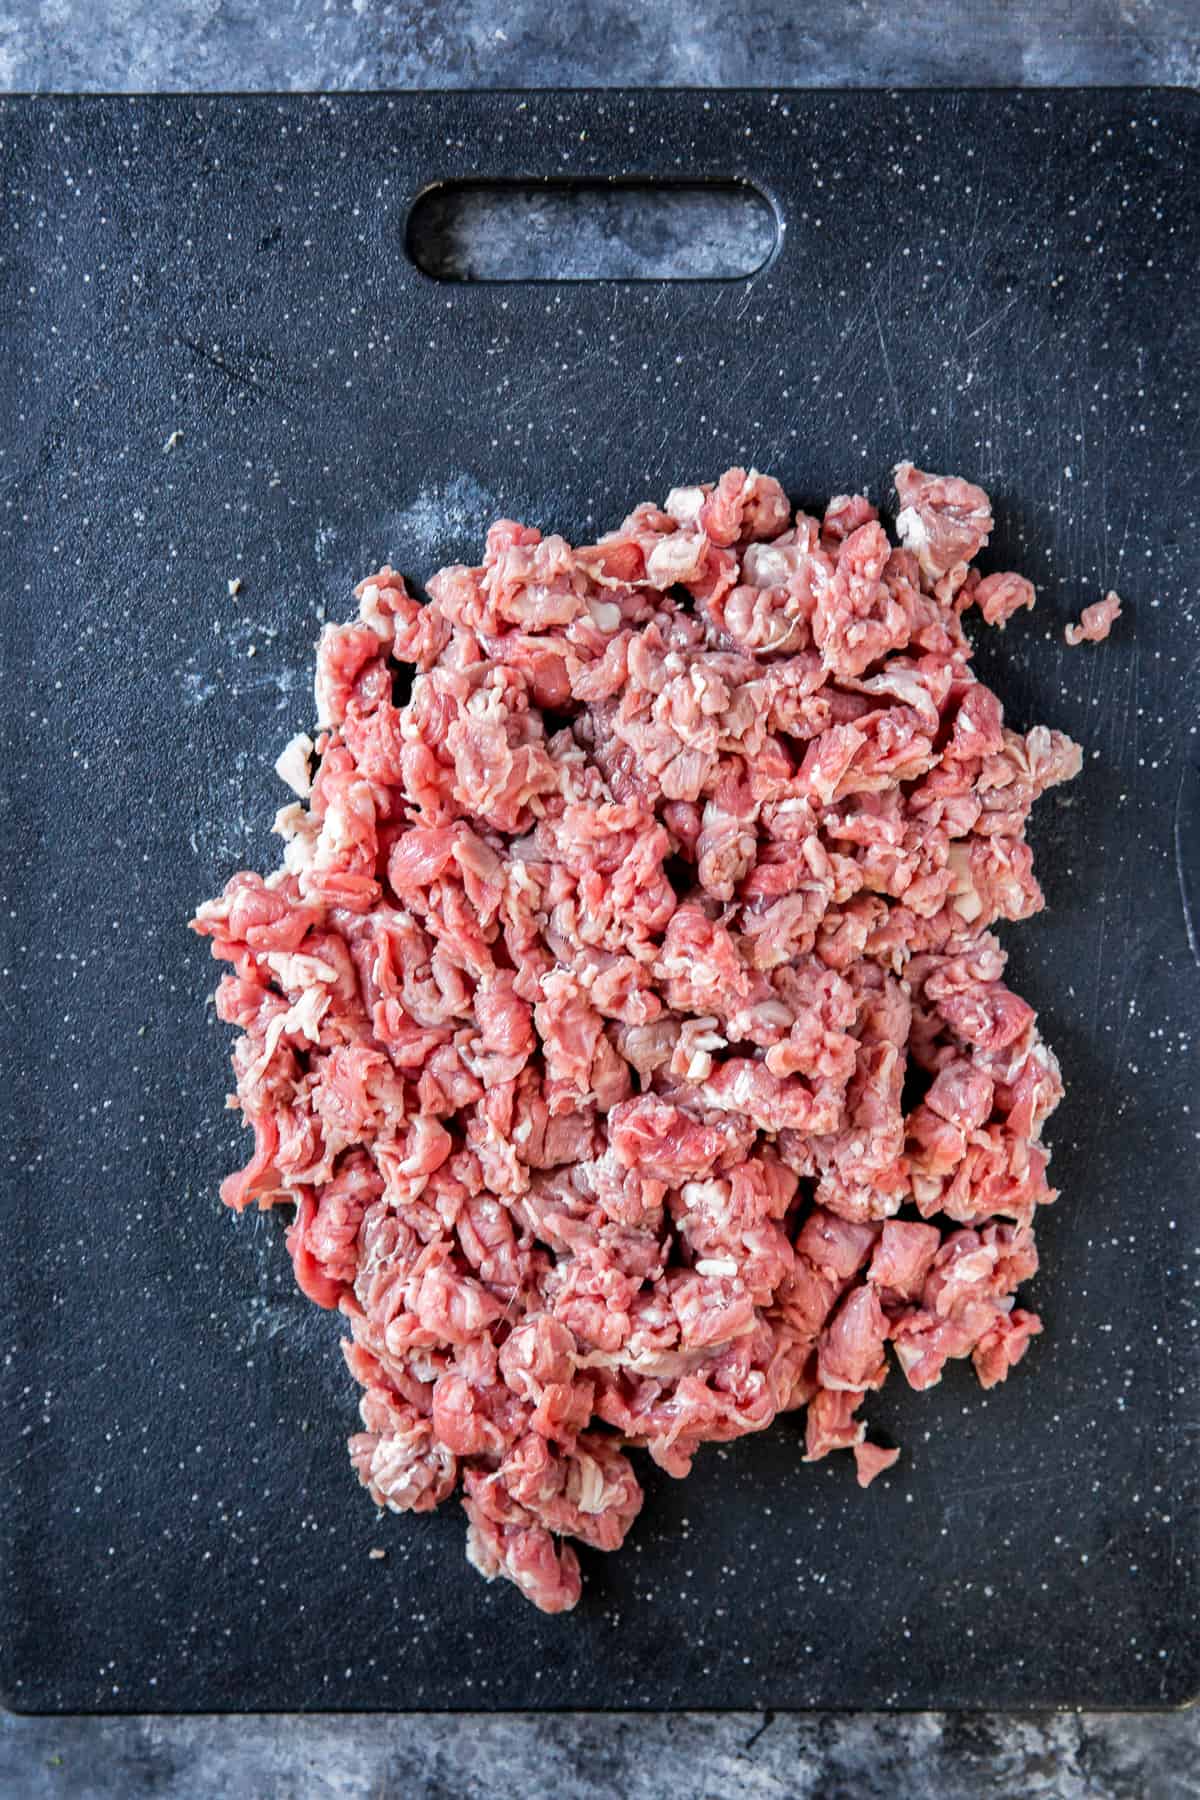 Raw steak on a cutting board